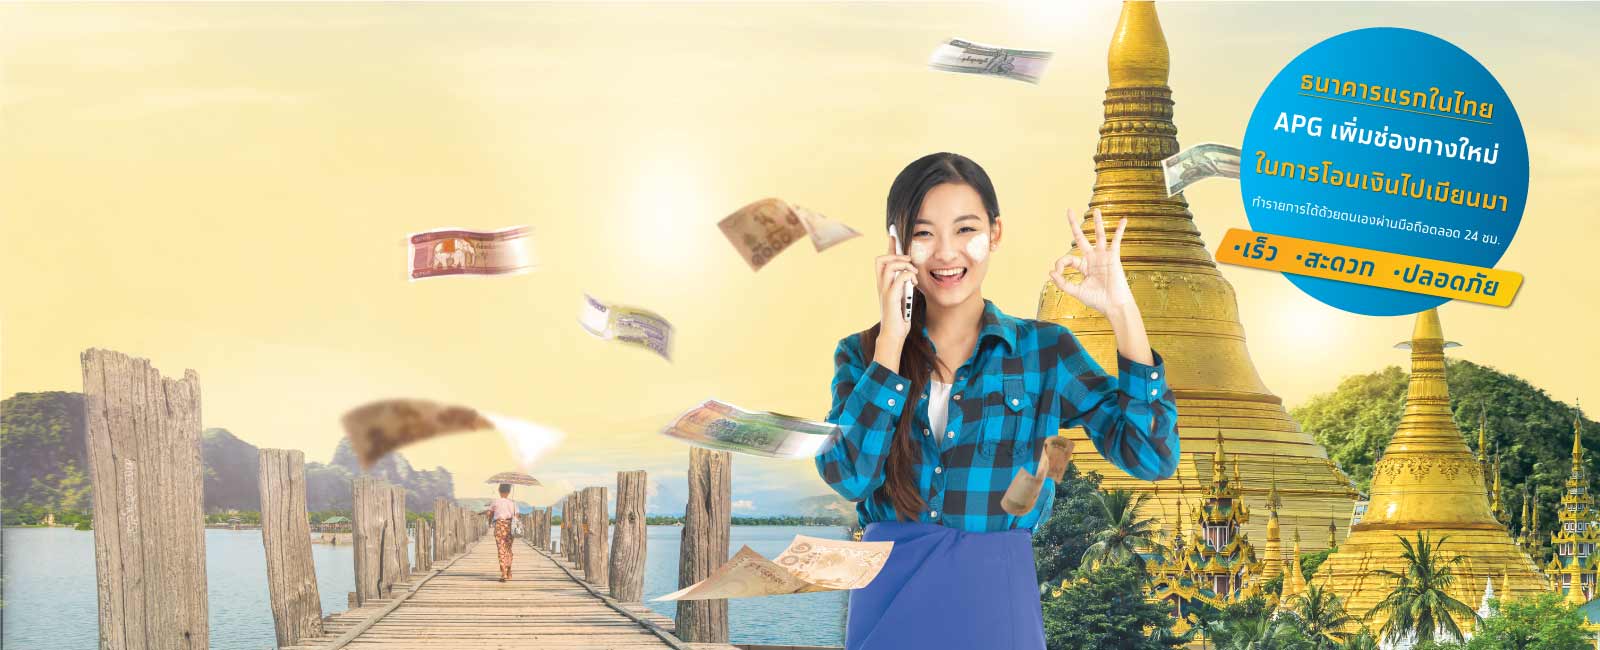 แลกเงินไทยเป็นเงินพม่า โอนเงินกลับเมียนมาอย่างปลอดภัย